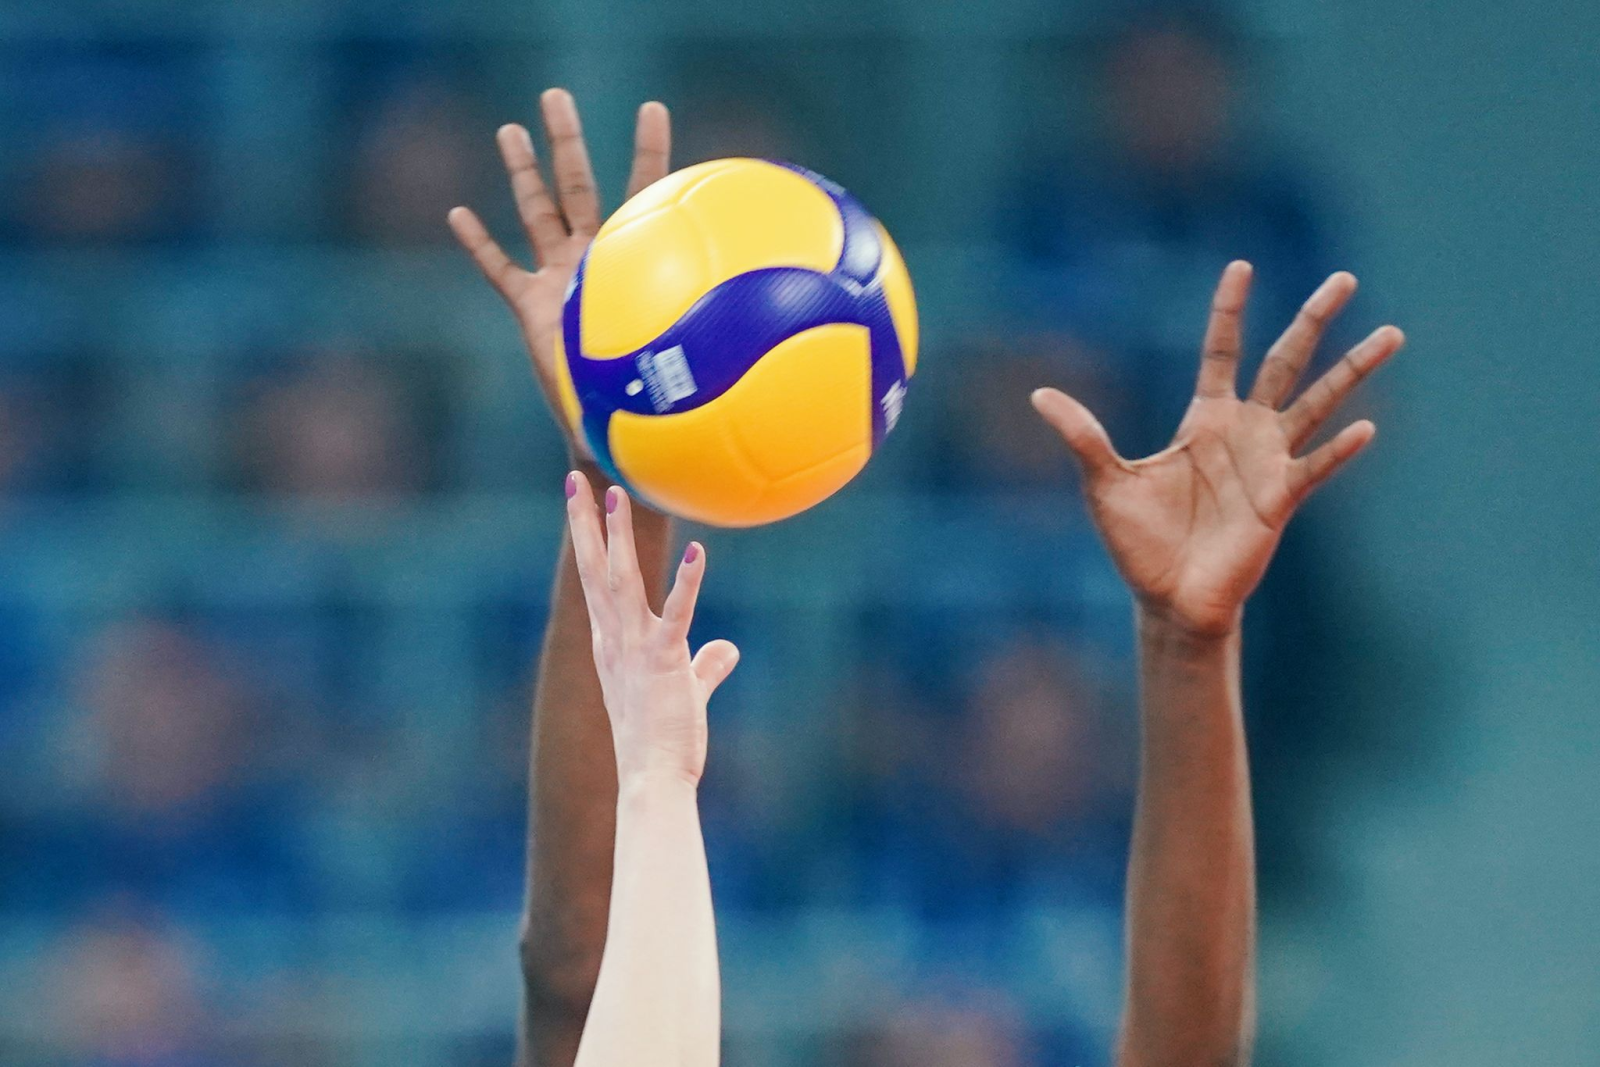 Spielerinnen strecken ihre Arme in Richtung eines Volleyballs.